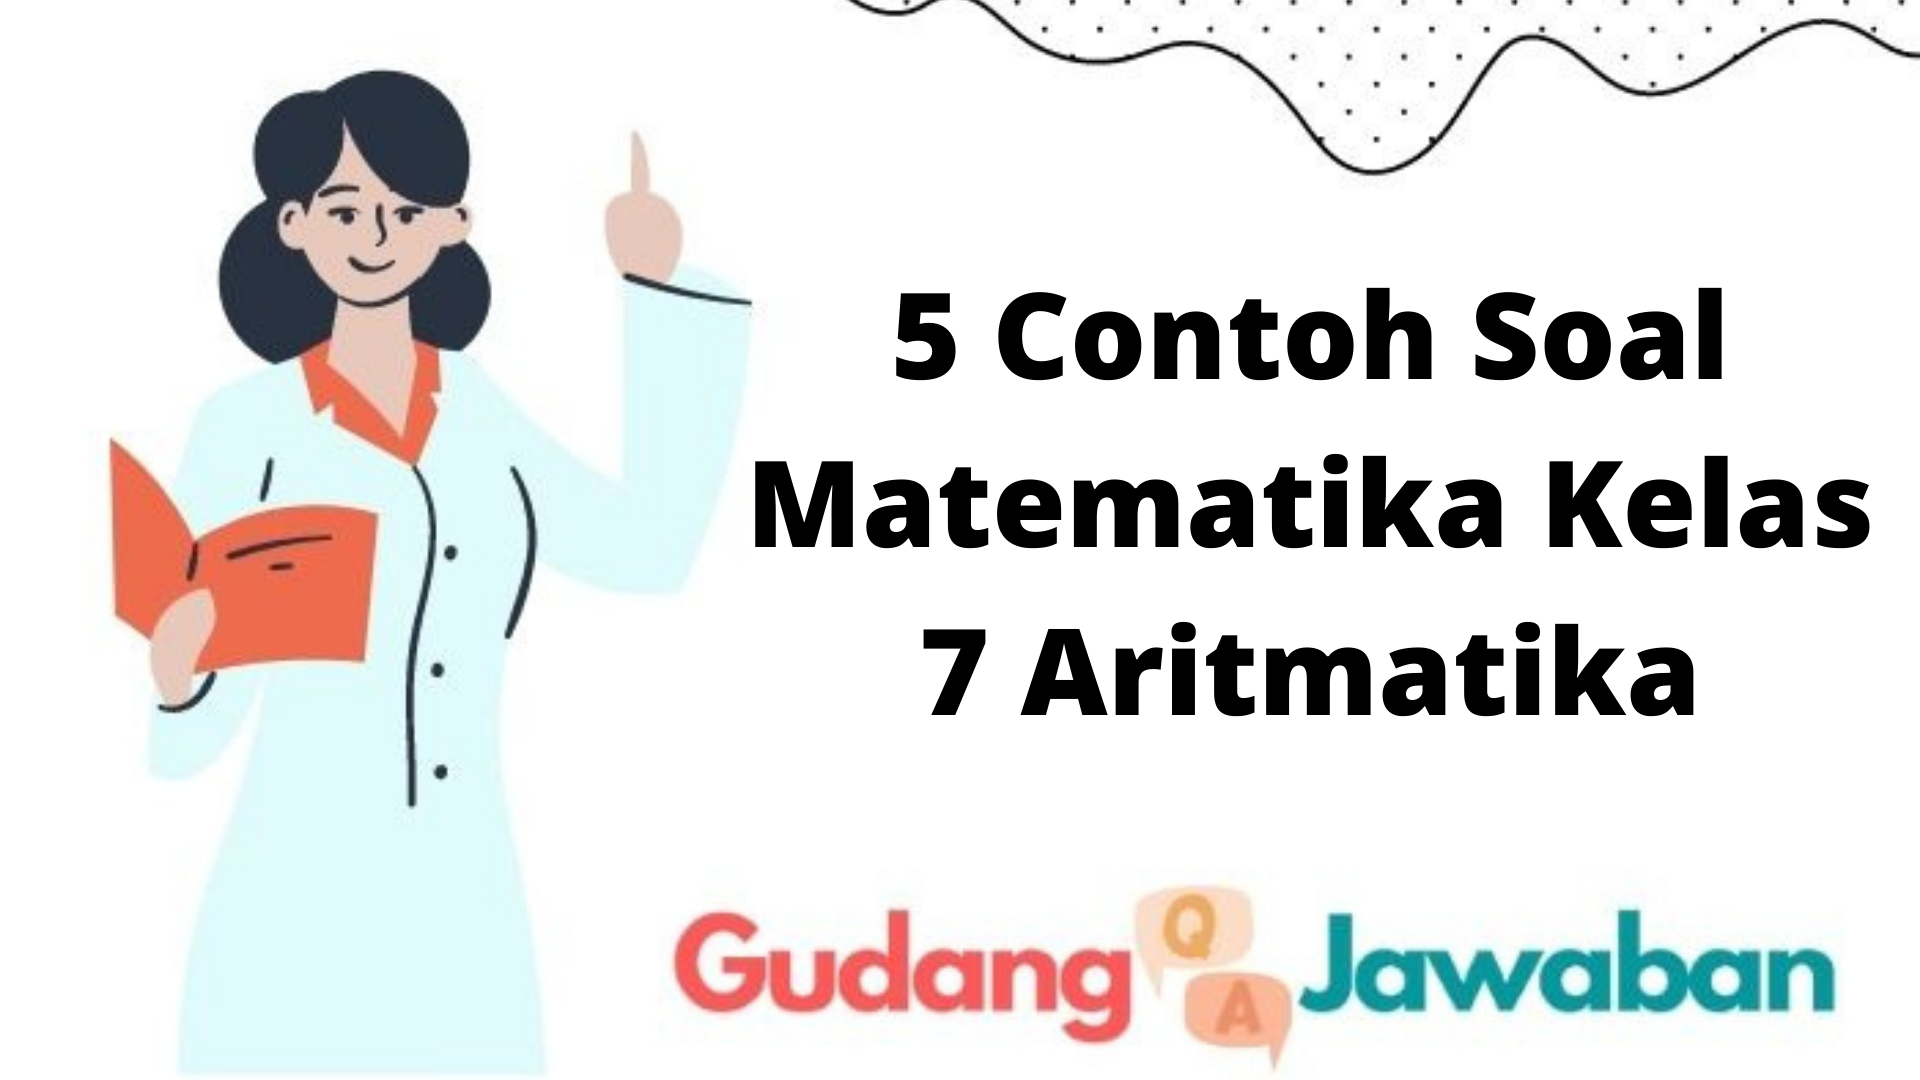 5 Contoh Soal Matematika Kelas 7 Aritmatika